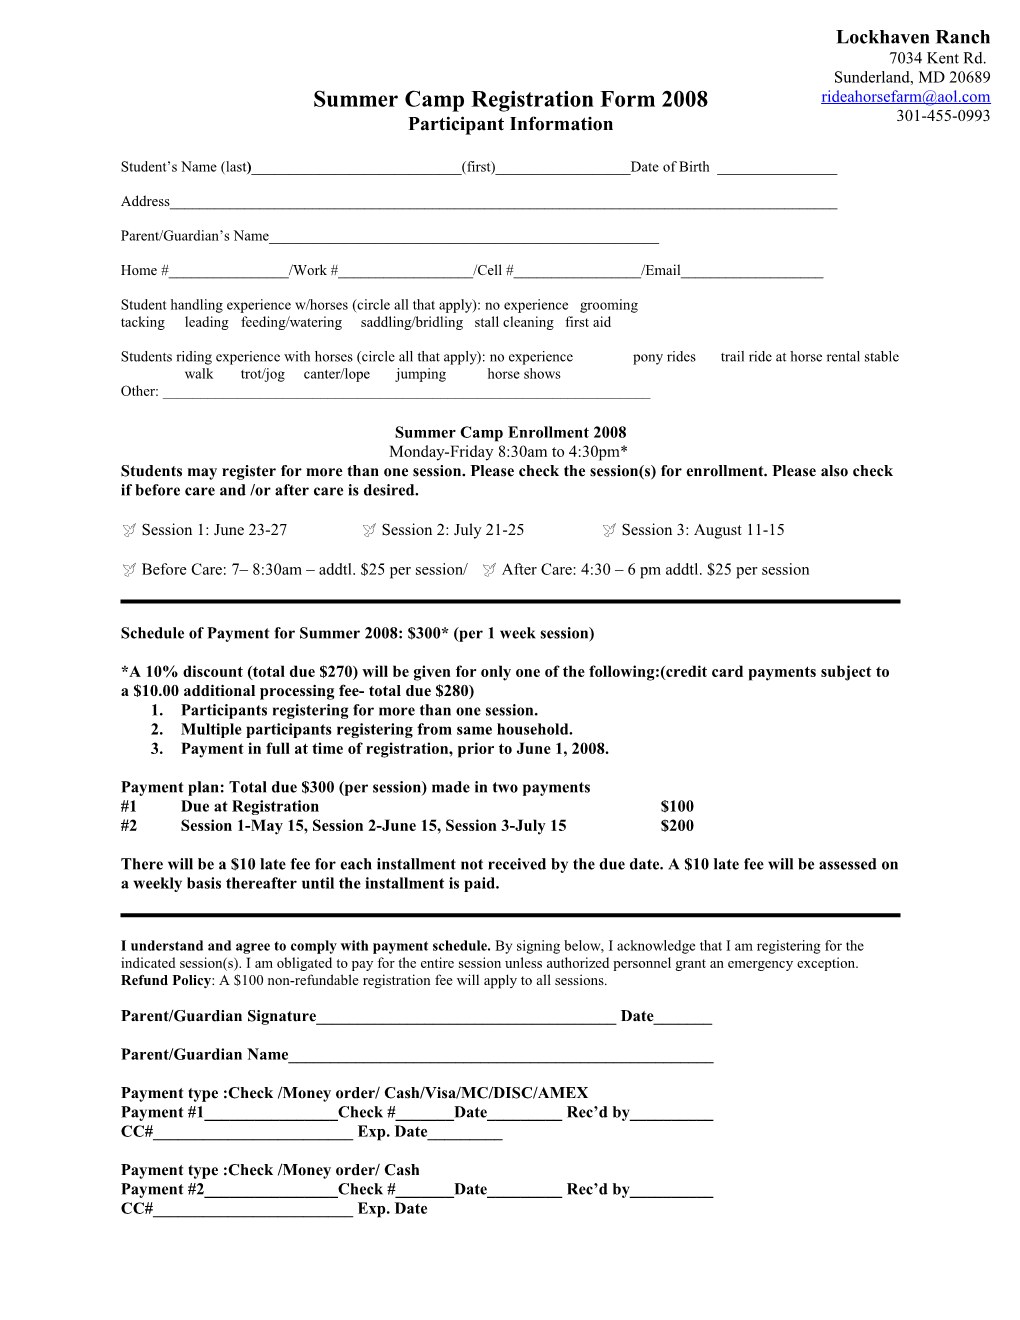 Summer Camp Registration Form 2008